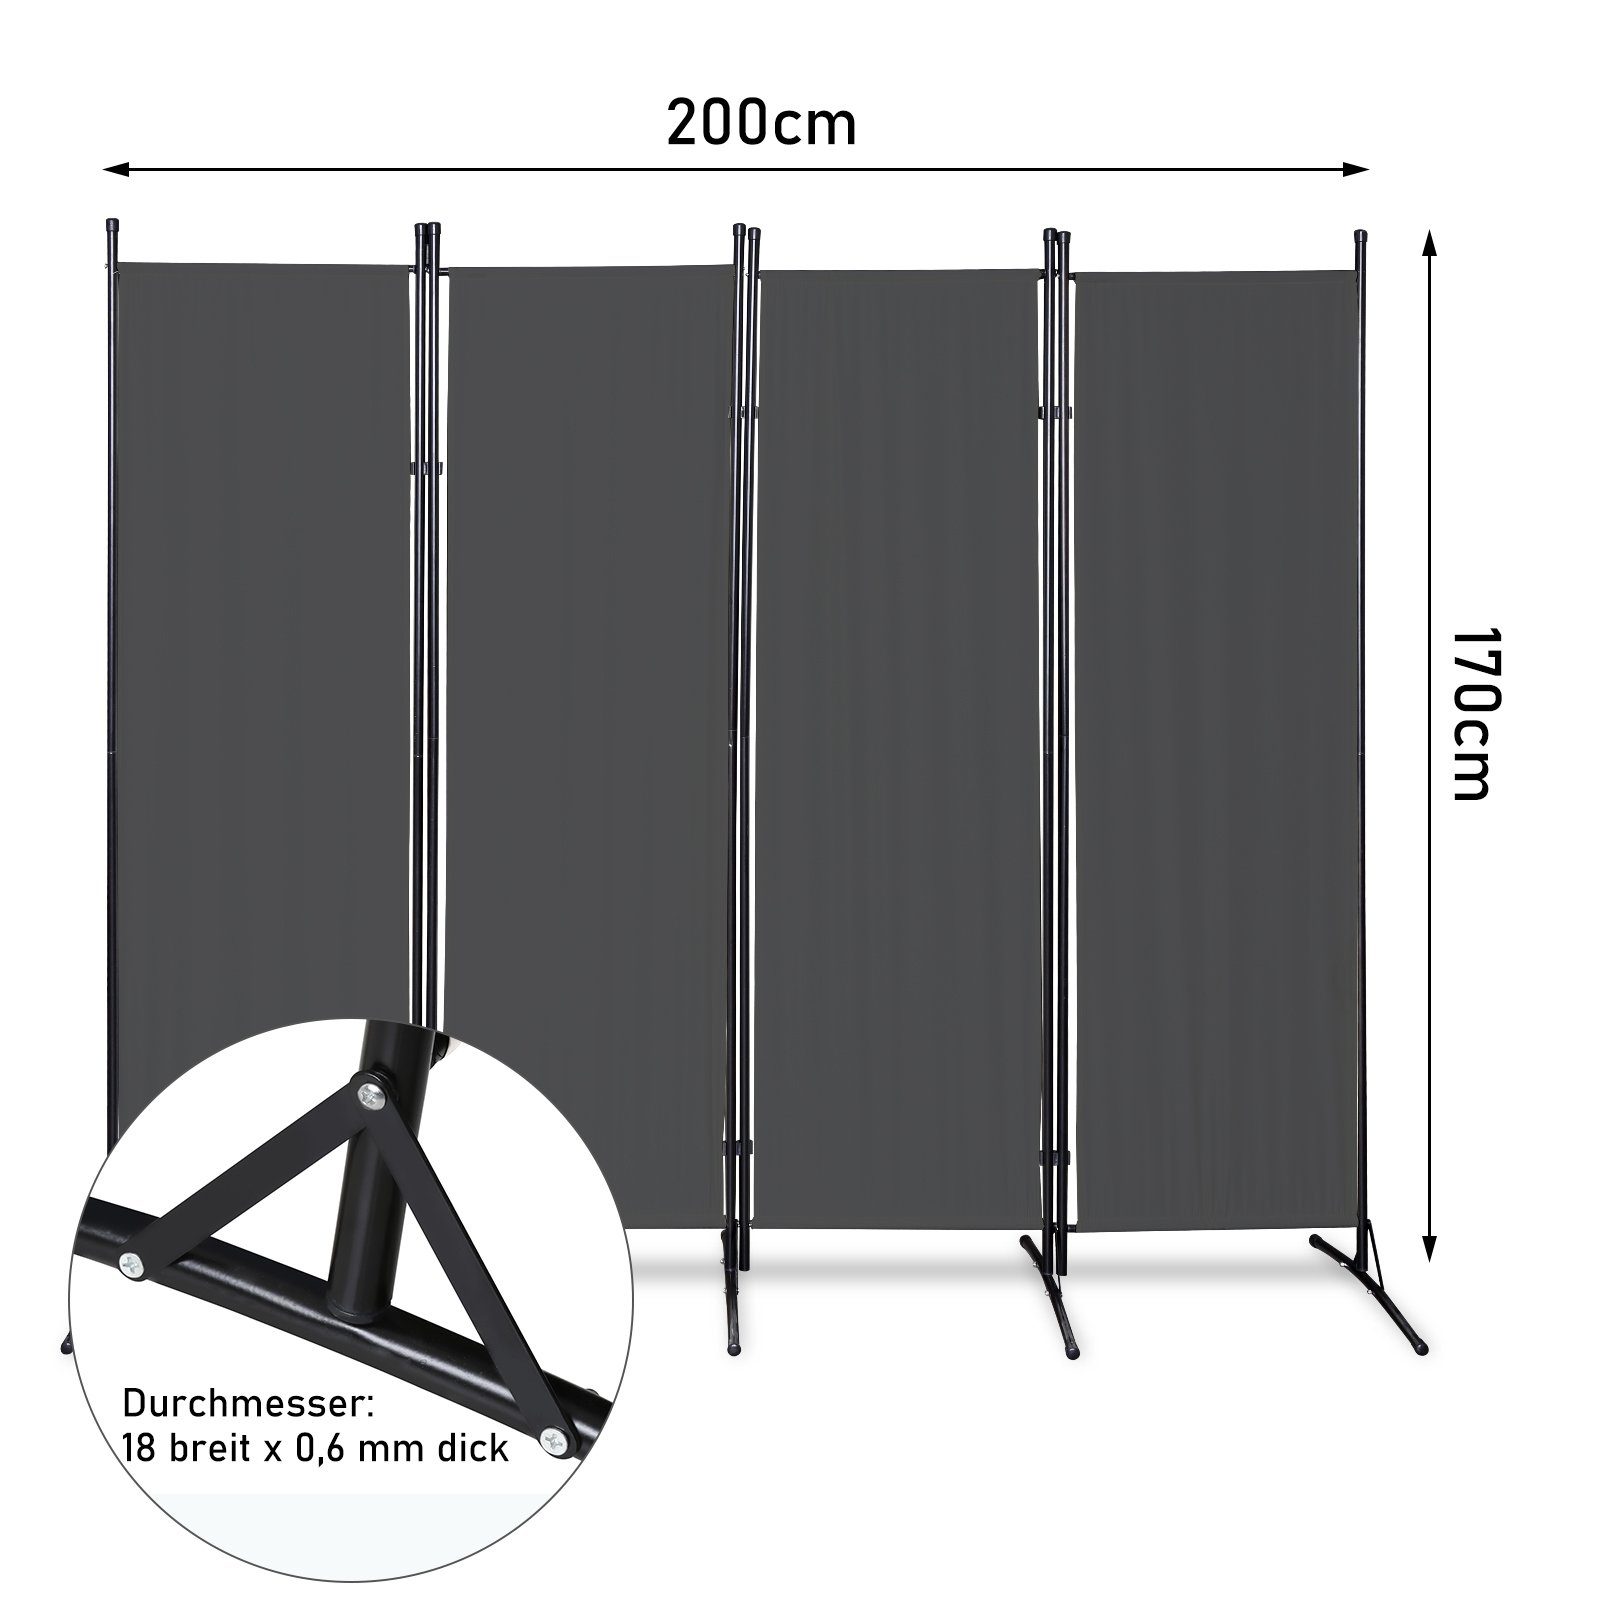 Clanmacy Paravent Zimmer Paravent Anthrazit Windschutz 4fach verlängerbar Stellwand Trennwand Raumteiler